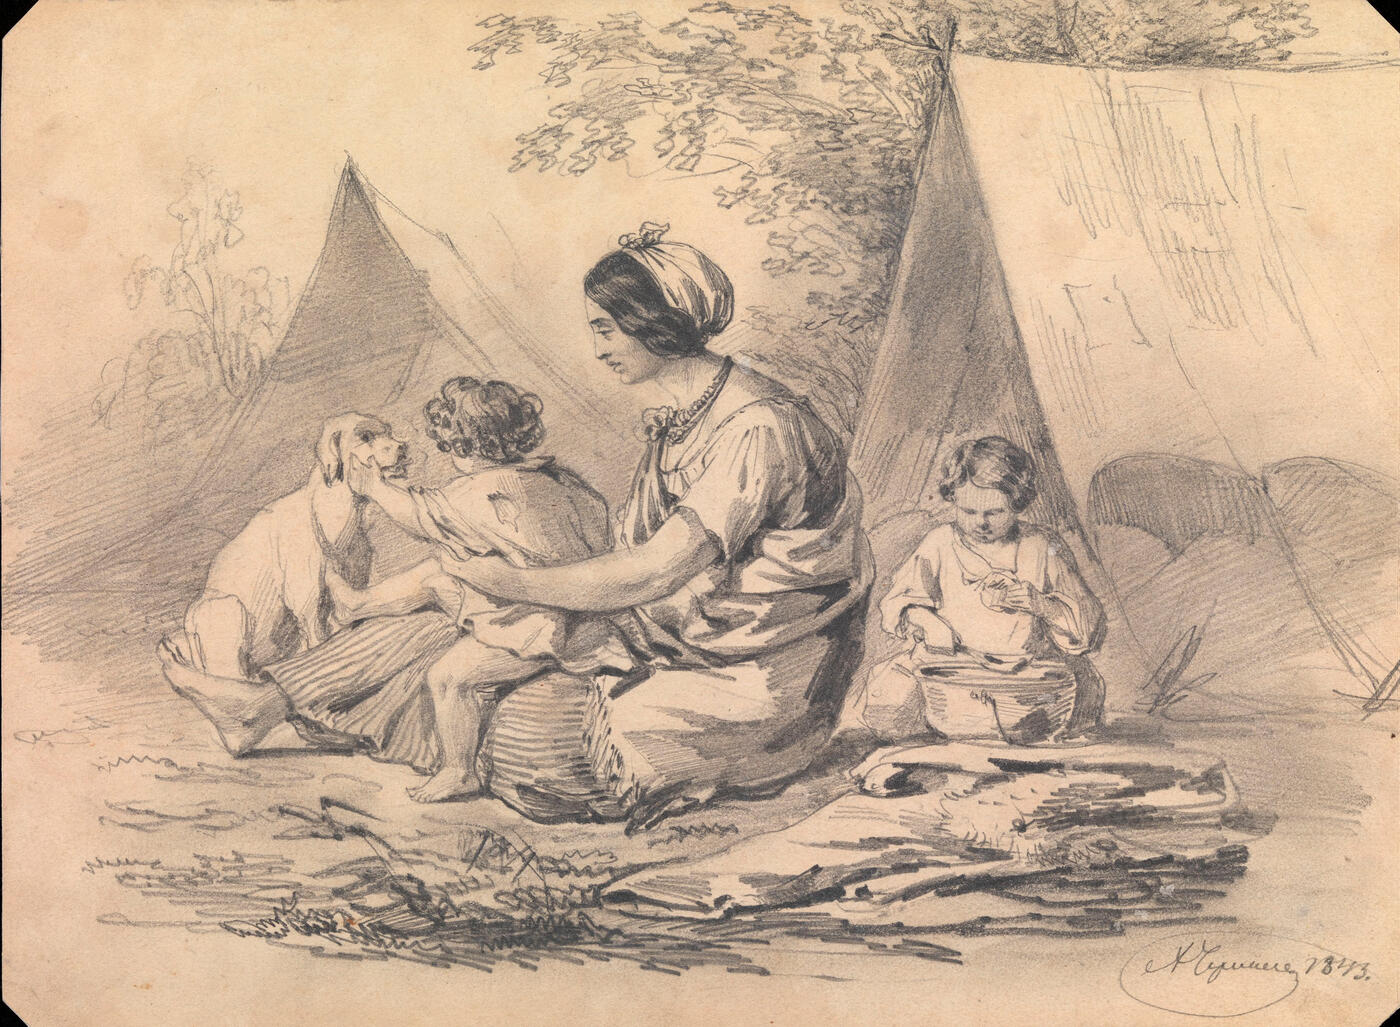 A Gypsy Camp